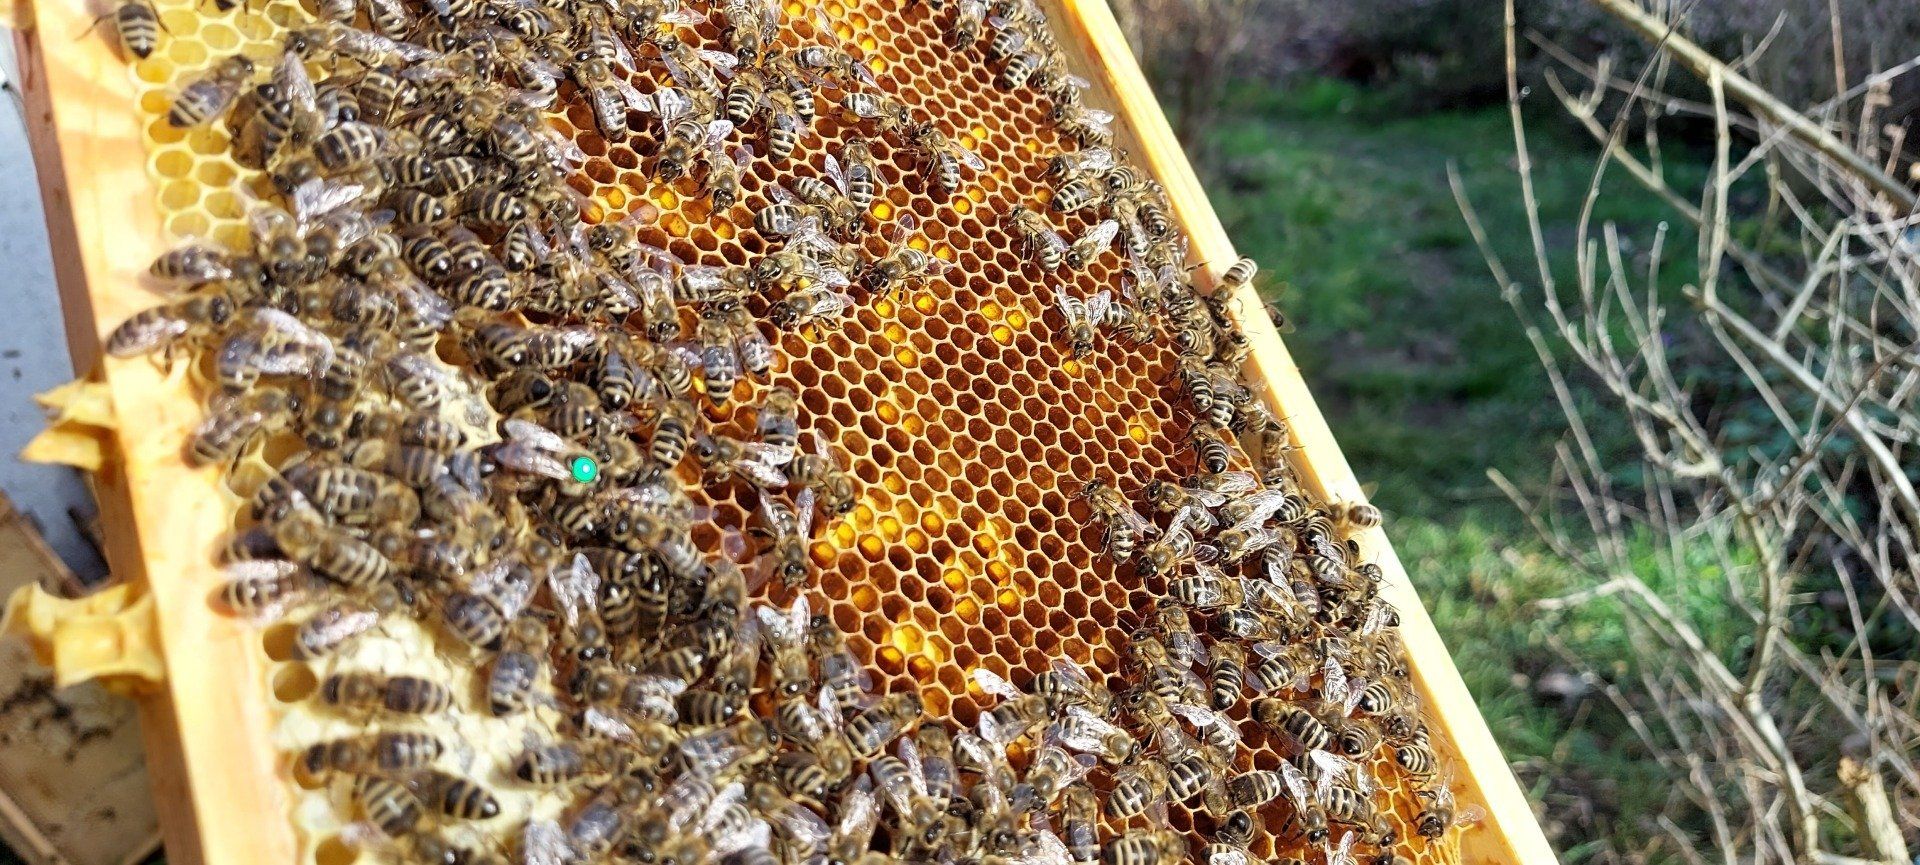 Ableger kaufen in Baden-Württemberg: Bienenvolk mit grün markierter Königin auf einer Wabe in Bietigheim/Baden bei der Natur-Imkerei Magers